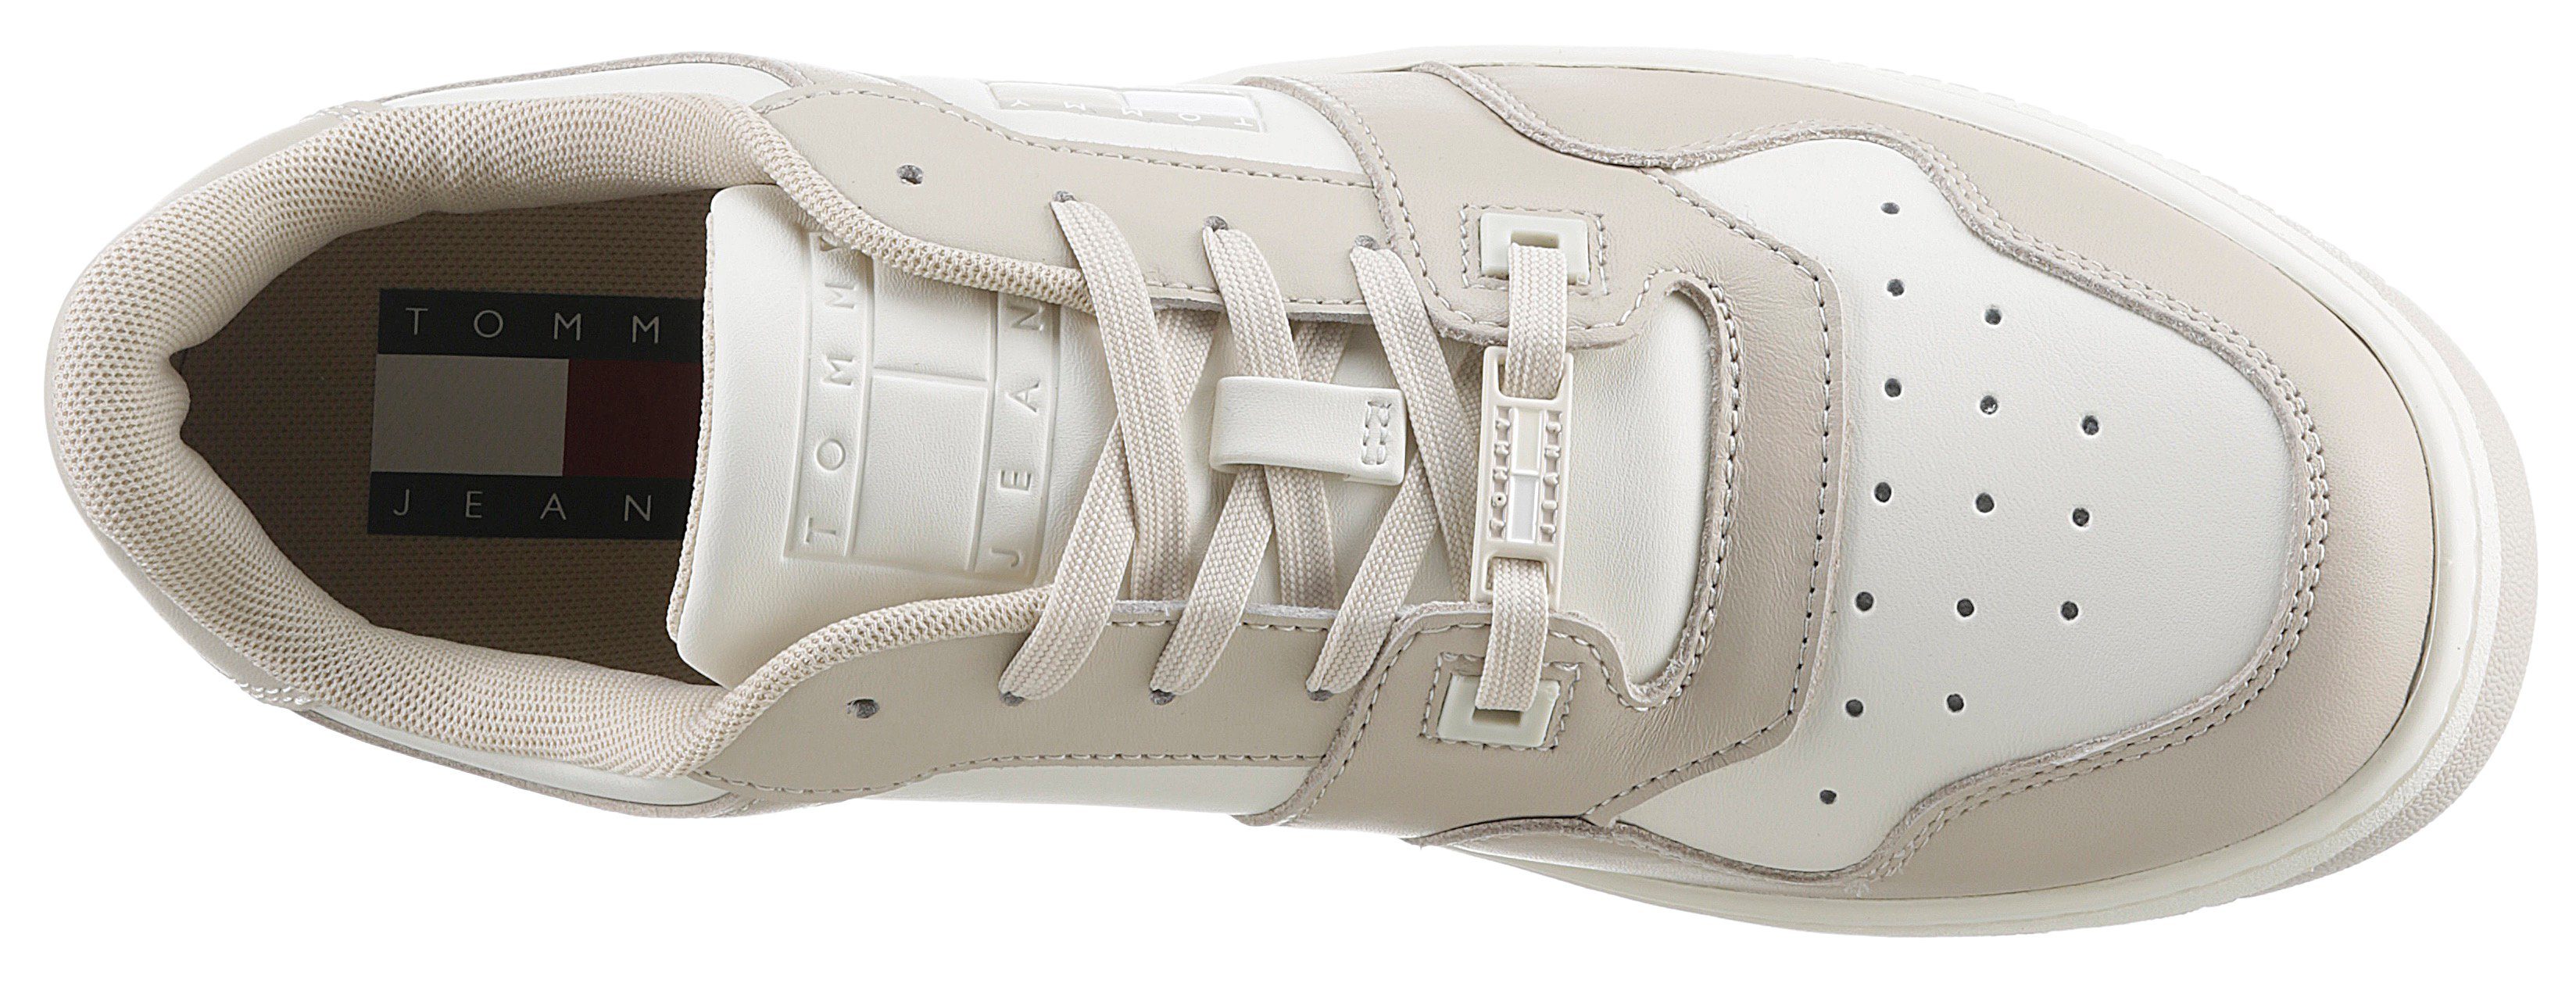 Tommy Jeans TOMMY JEANS RETRO LOW Keilsneaker Look, (schmal) E im WMN Schuhweite beige-weiß FANCY in two-tone